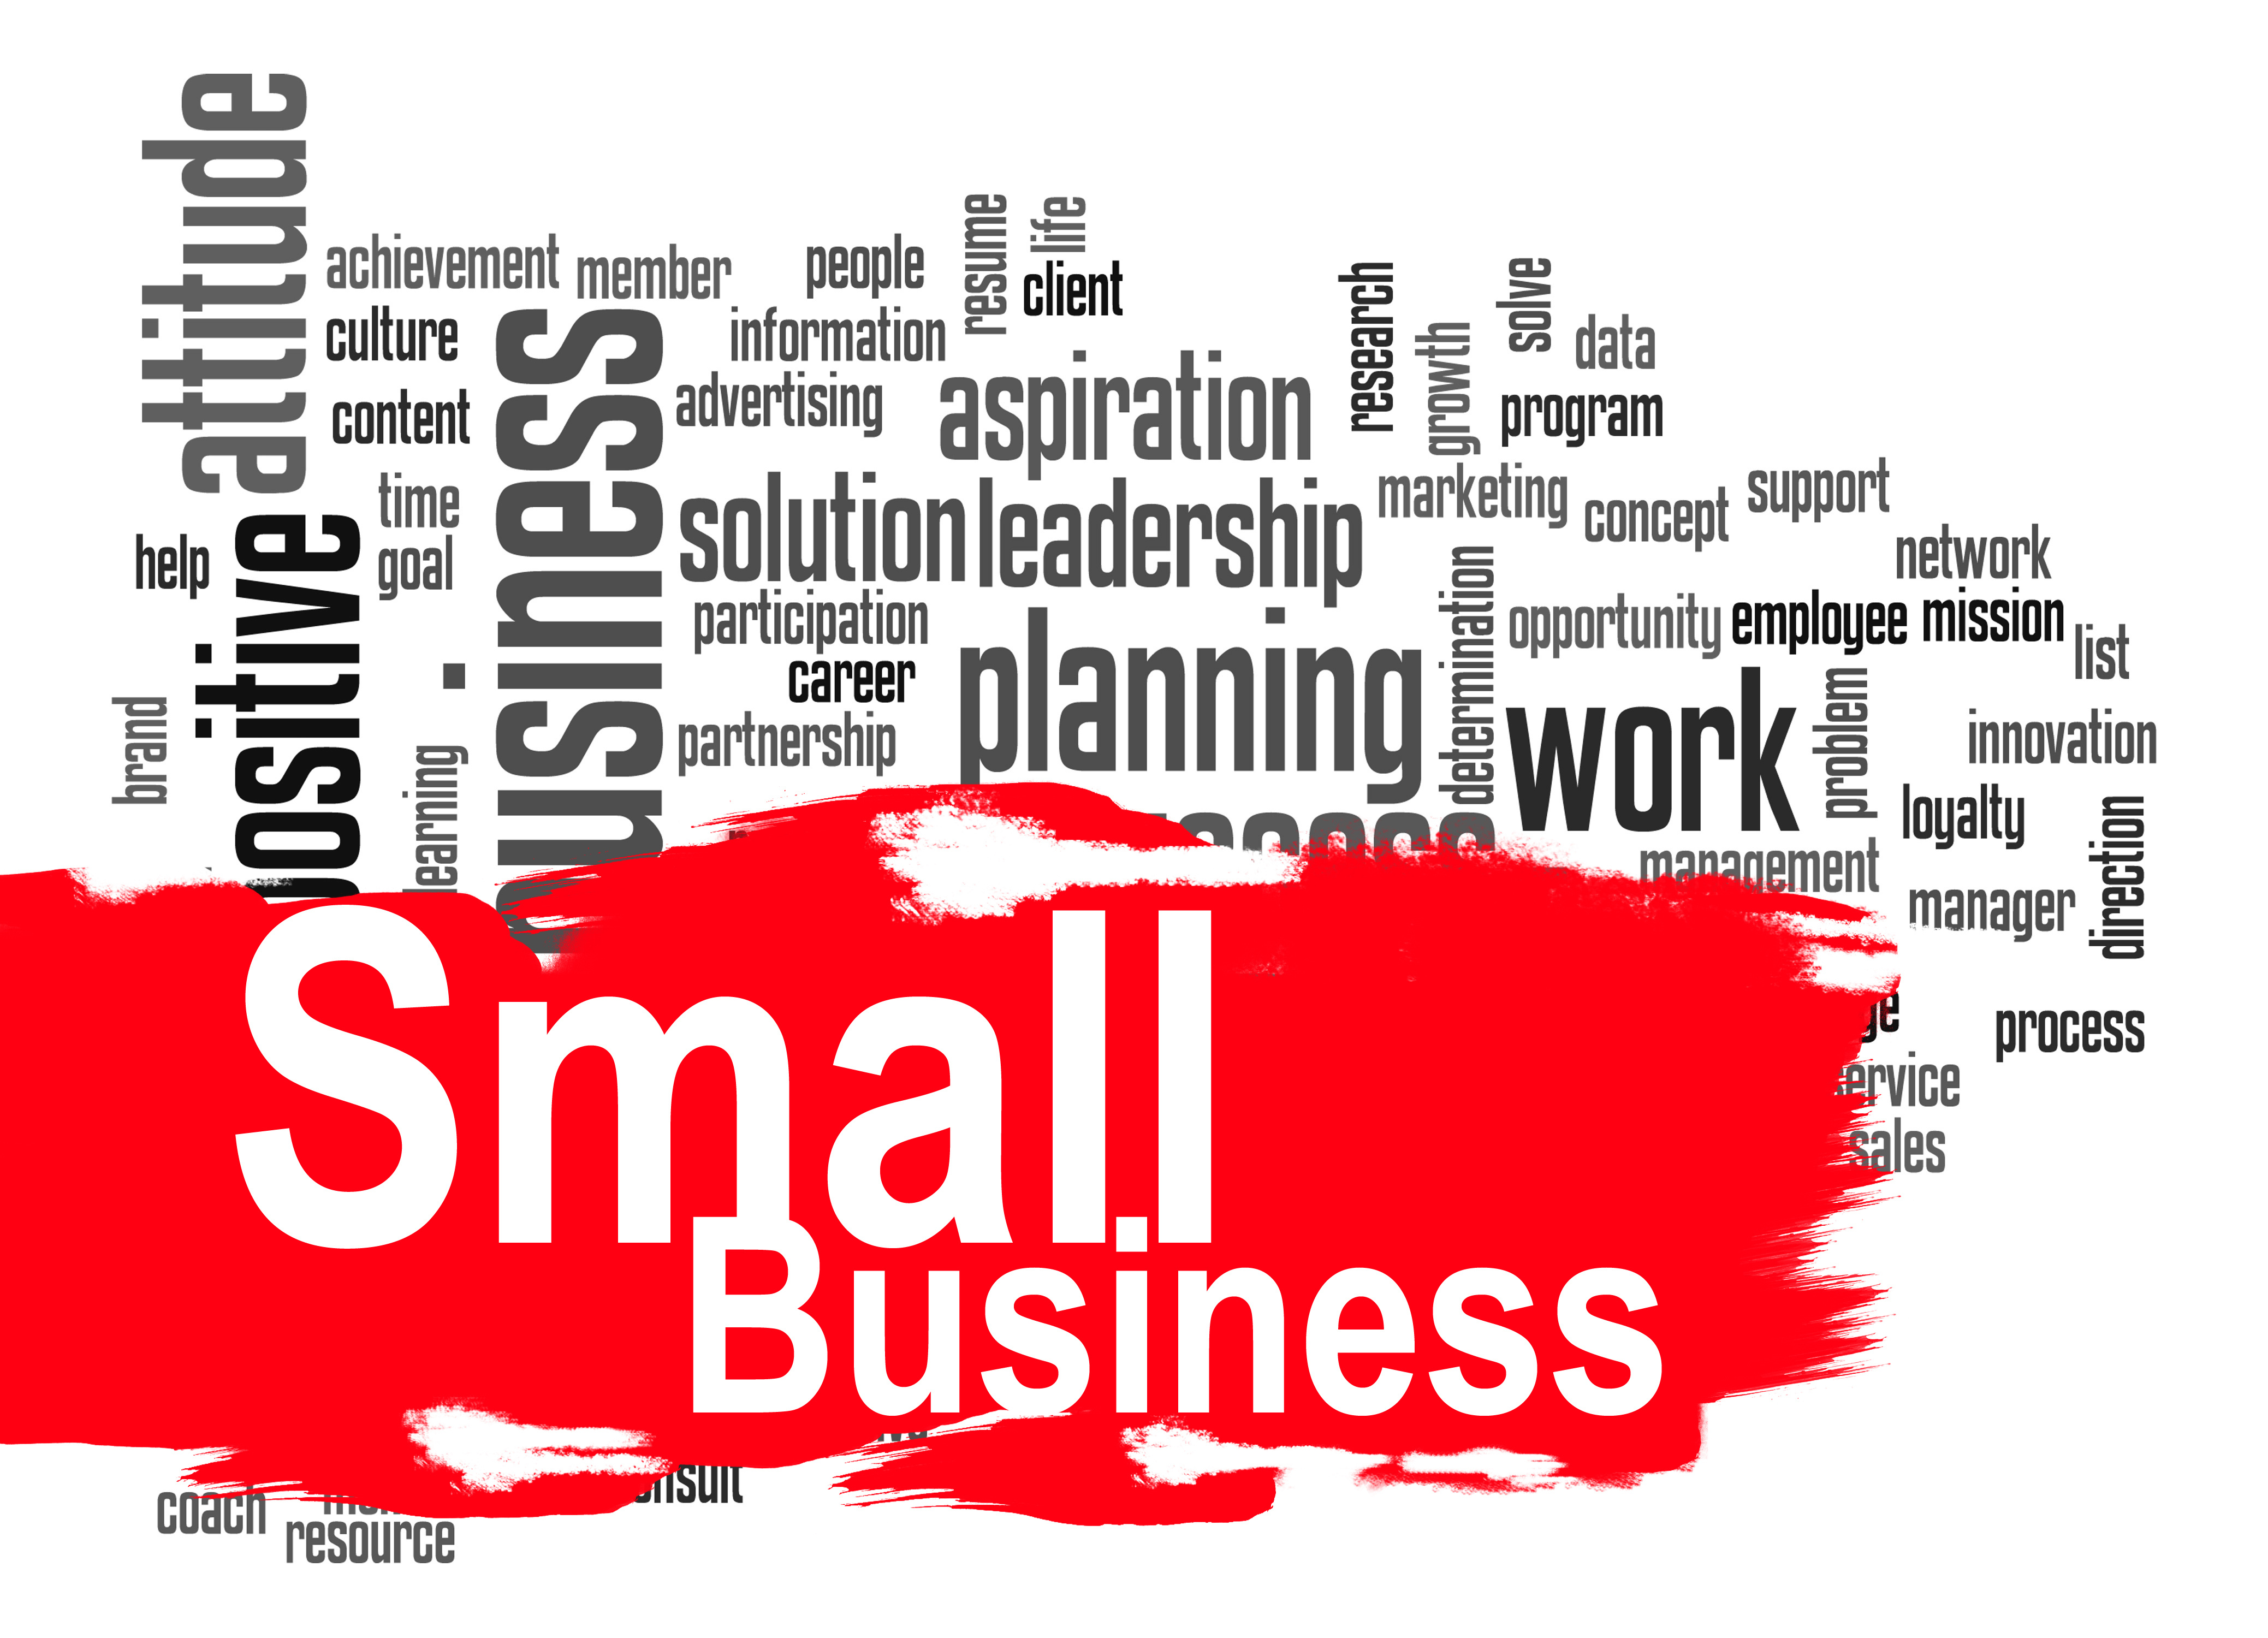 Small Business, Leadership, Planning, Digital Marketing, Advertising, Social Media Marketing